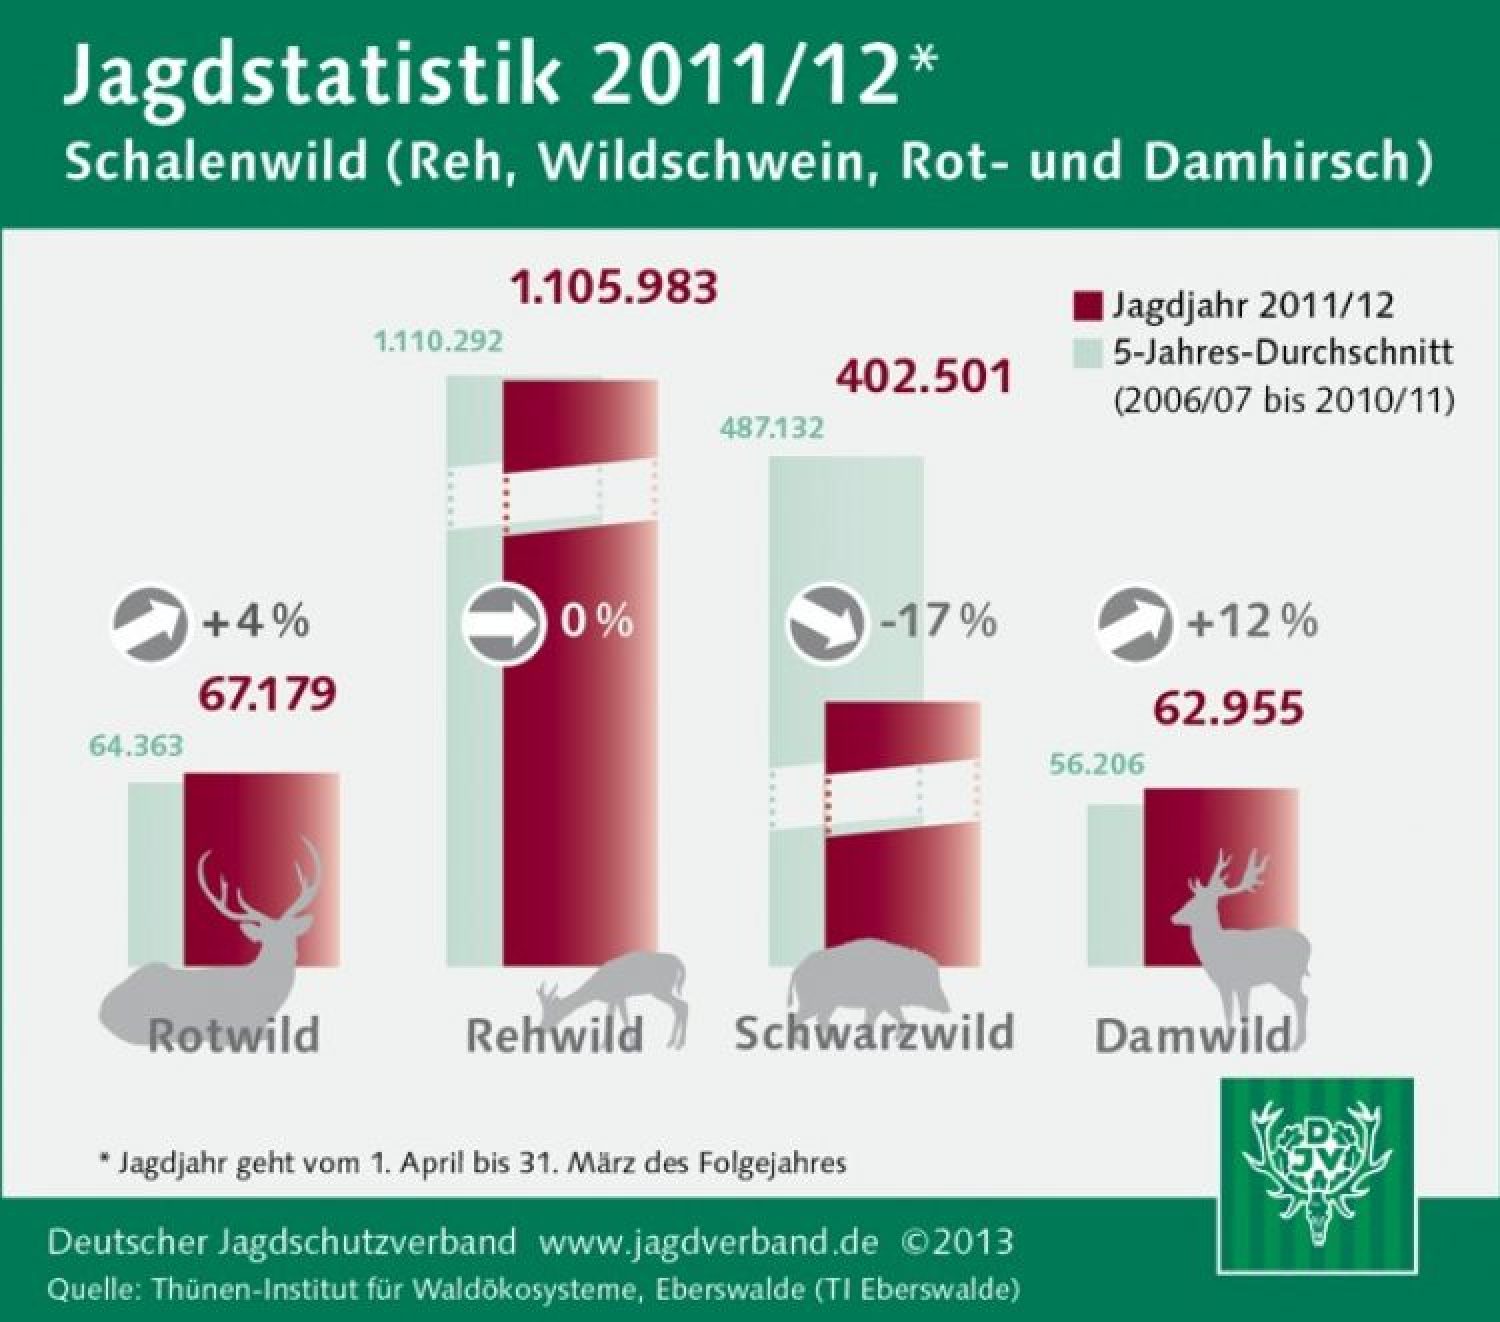 Der DJV veröffentlicht die Jagdstatistik 2011/2012